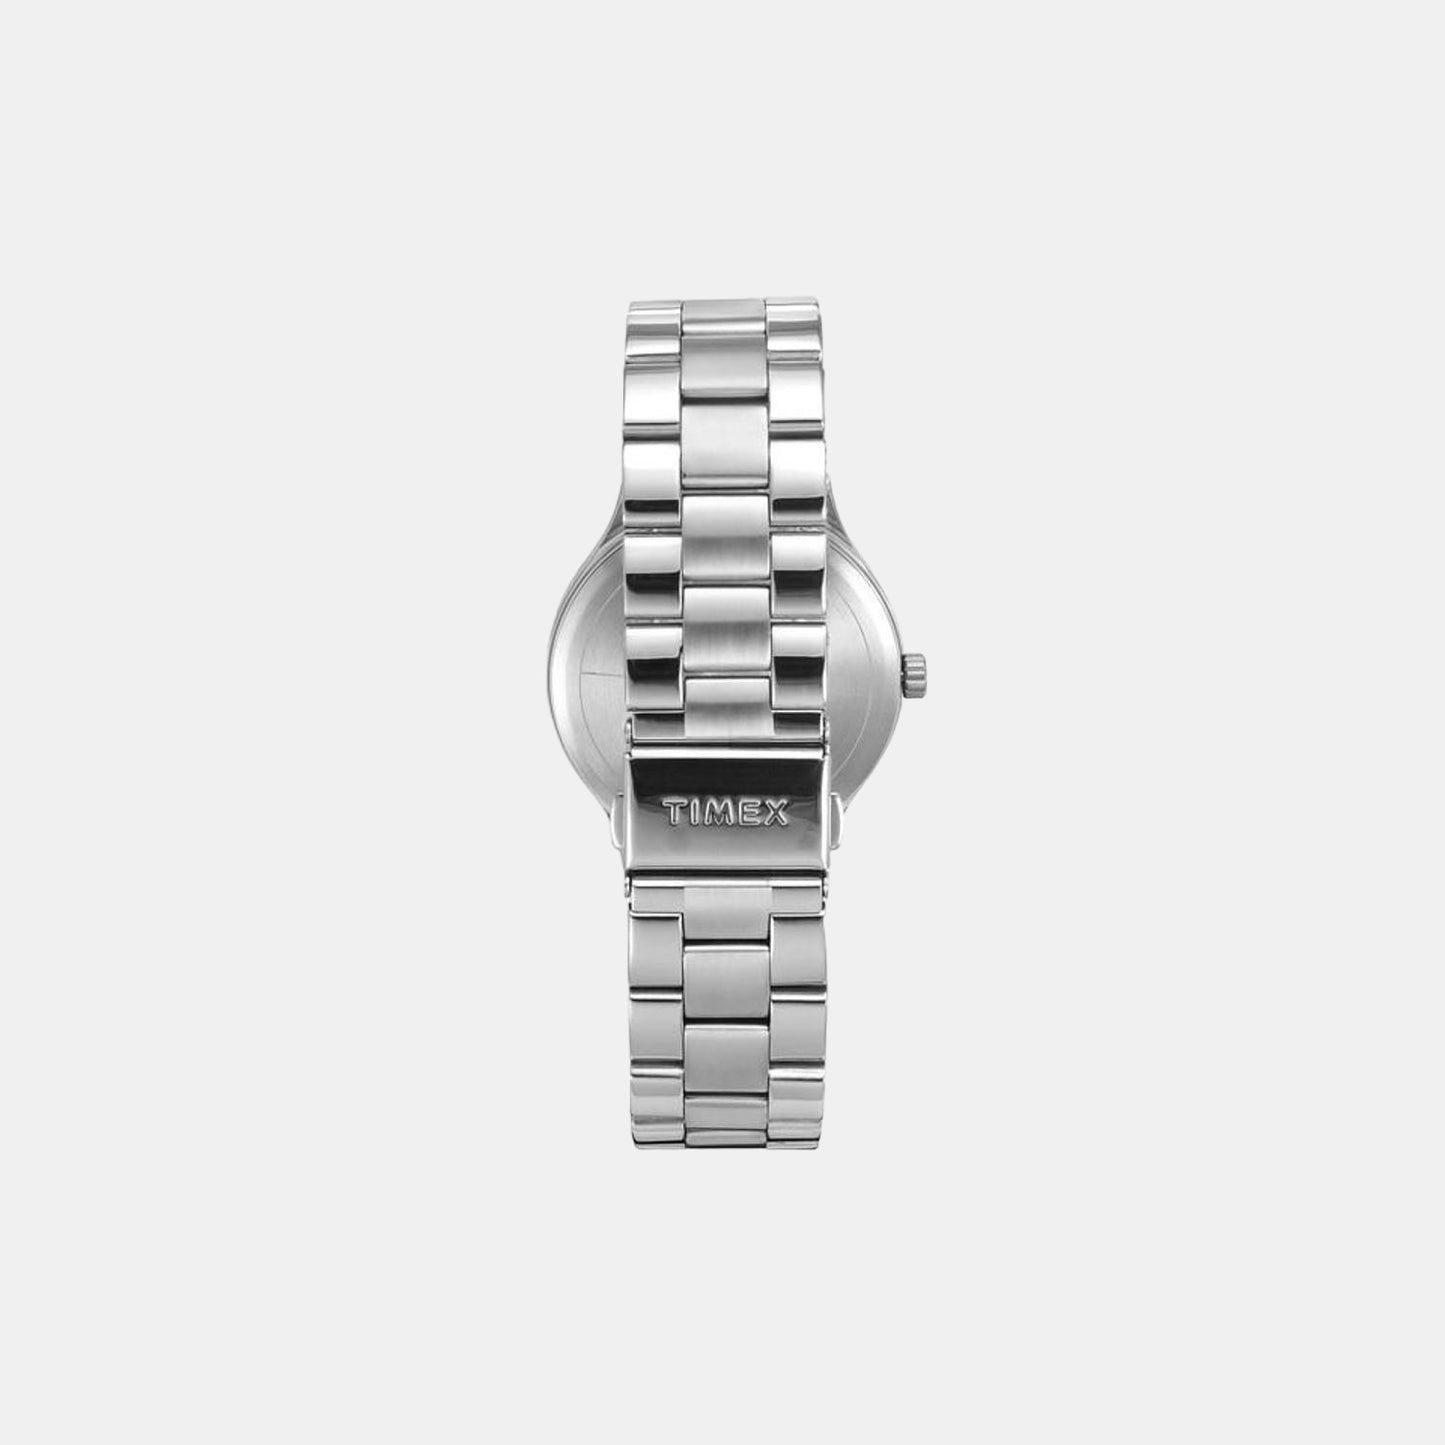 timex-brass-white-analog-men-watch-tweg18420